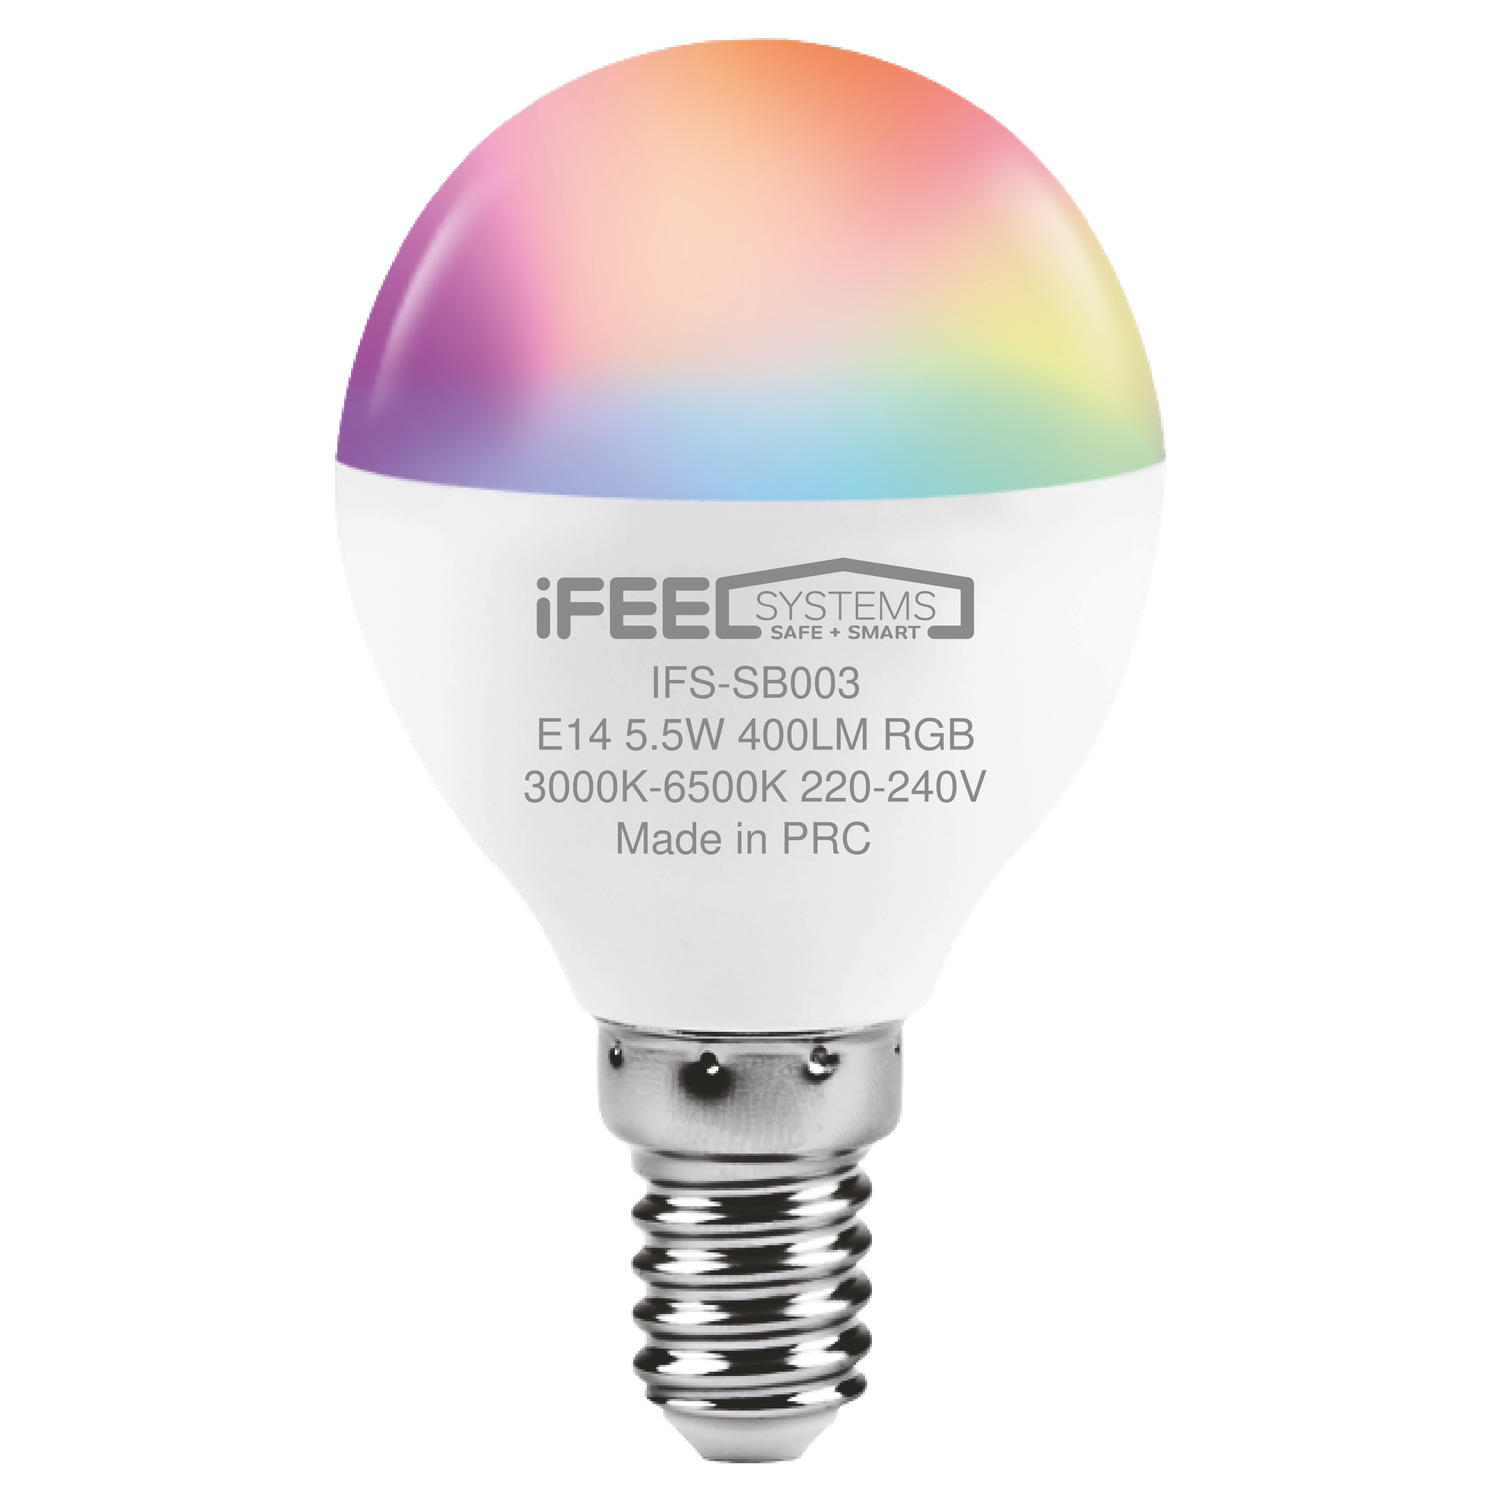 Умная лампочка iFEEL Globe Шар E14 RGB с Wi-Fi Алисой - фото 1